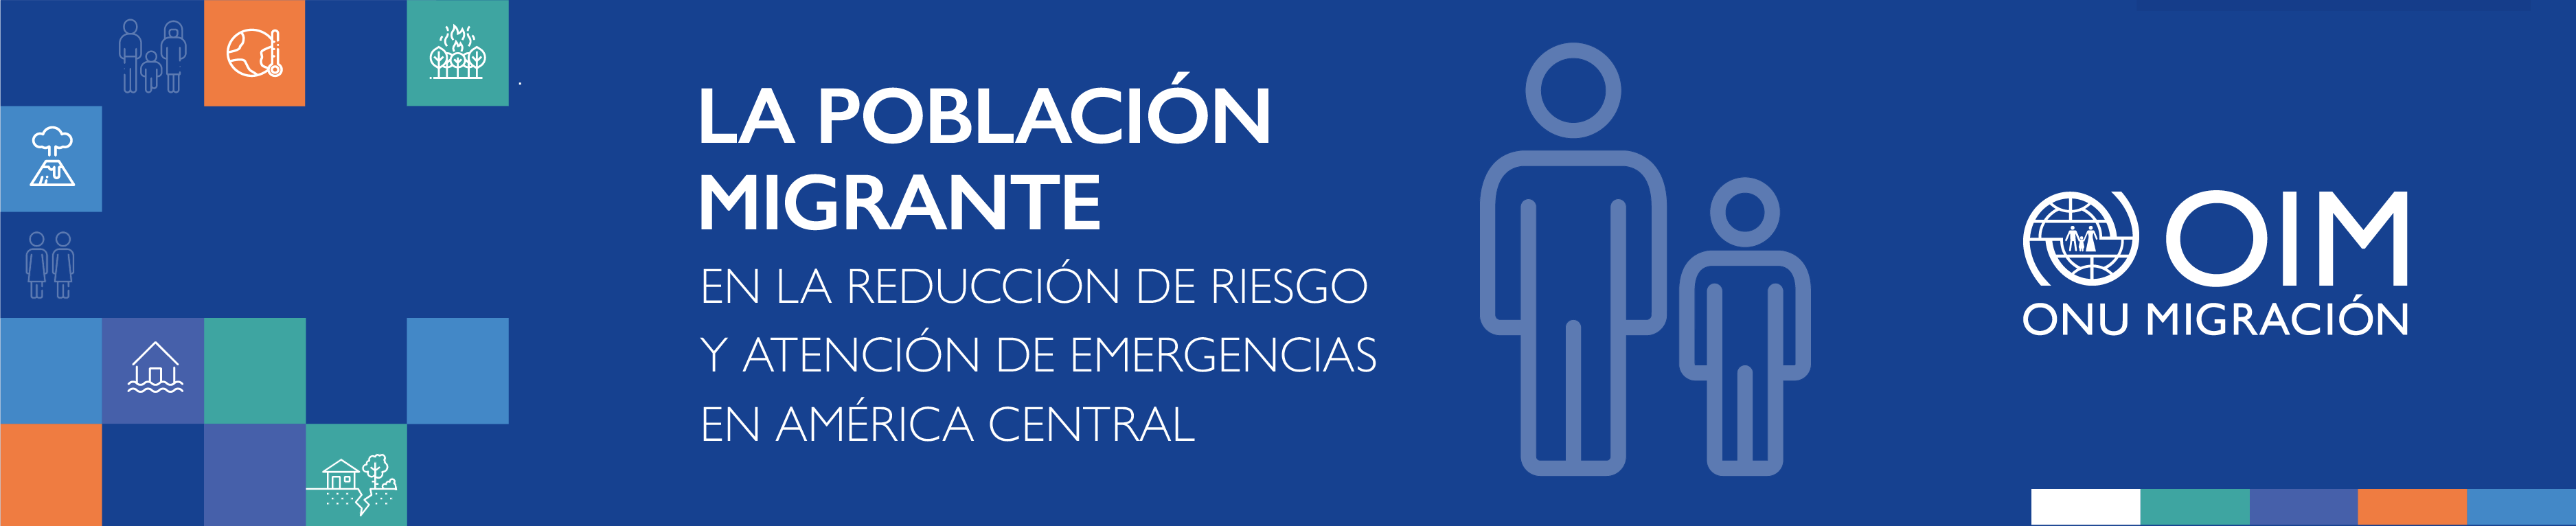 La Población Migrante en la Reducción de Riesgo y Atención de Emergencias en América Central